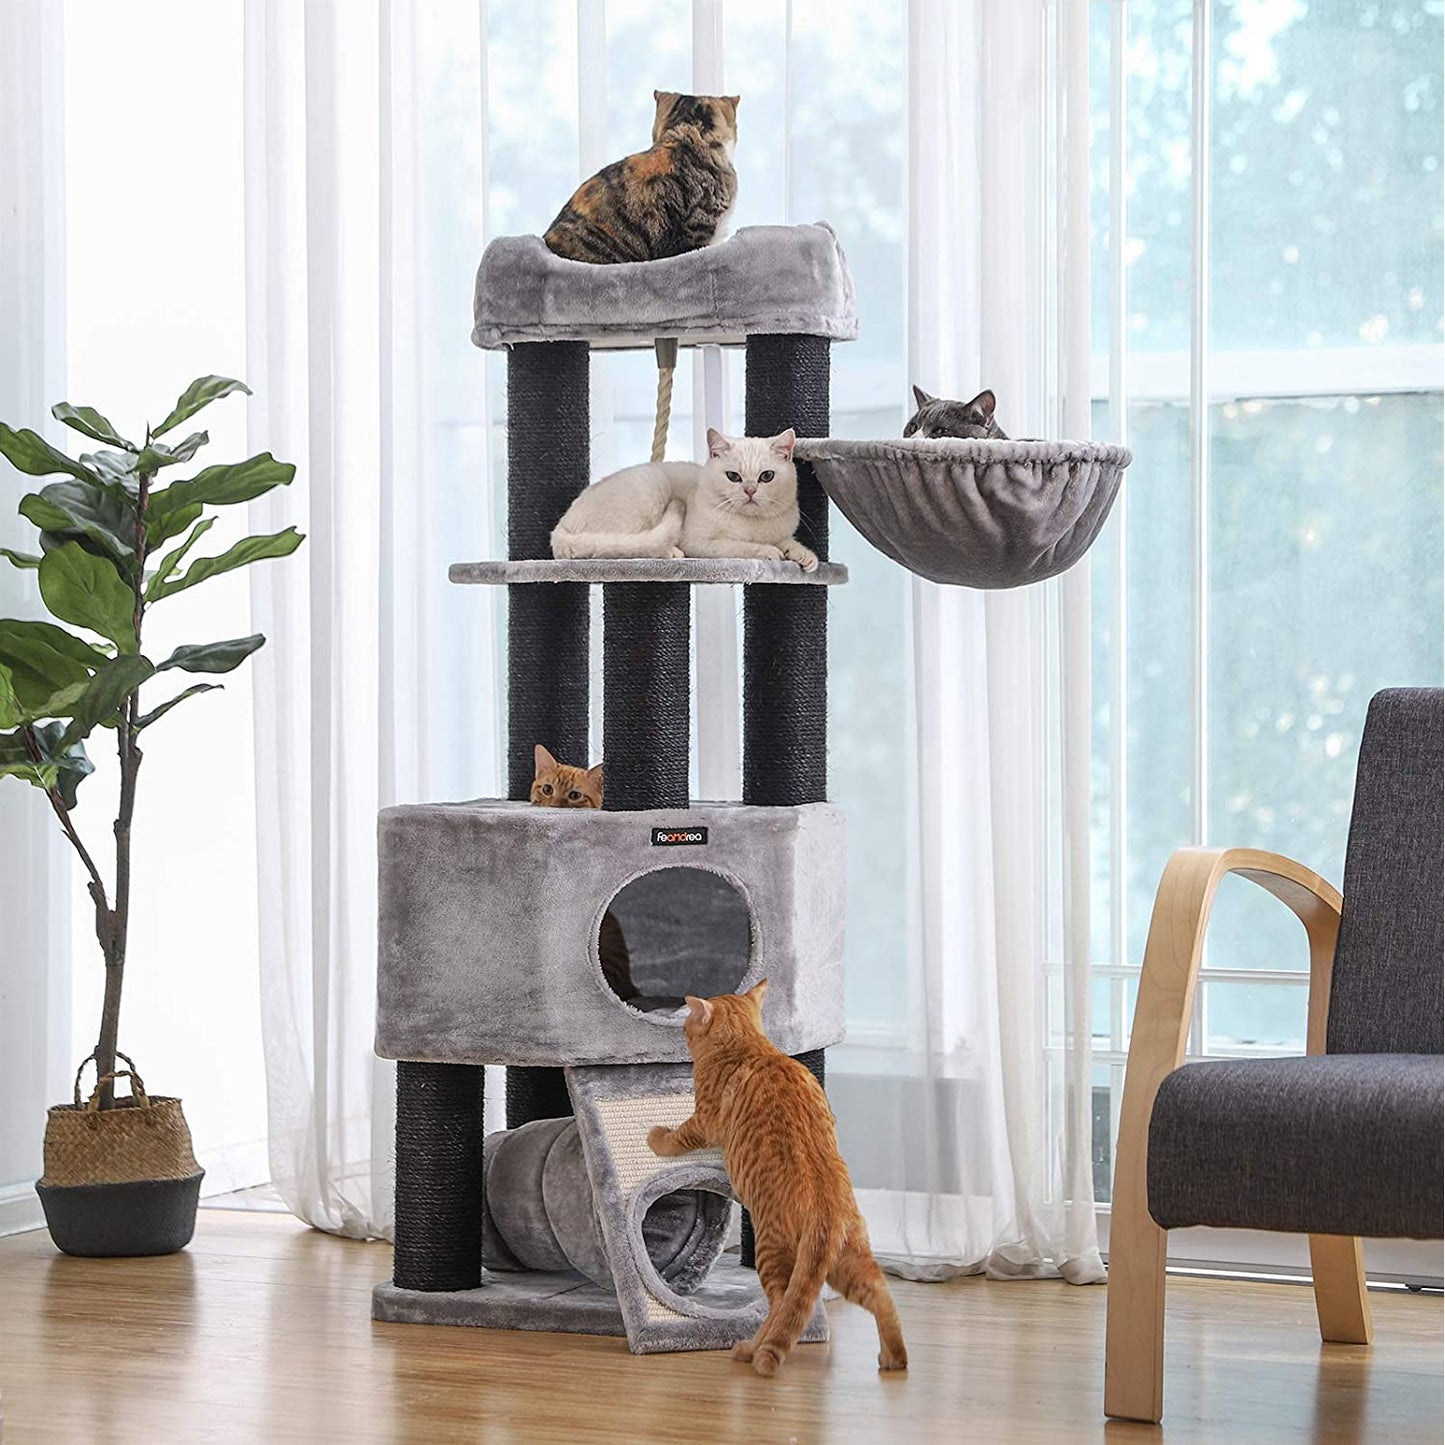 Arbre à chat Nancy's XL - Maison pour chat de luxe - Griffoir - Chats - Pour 4 chats - 50 x 50 x 141 cm (L x L x H)